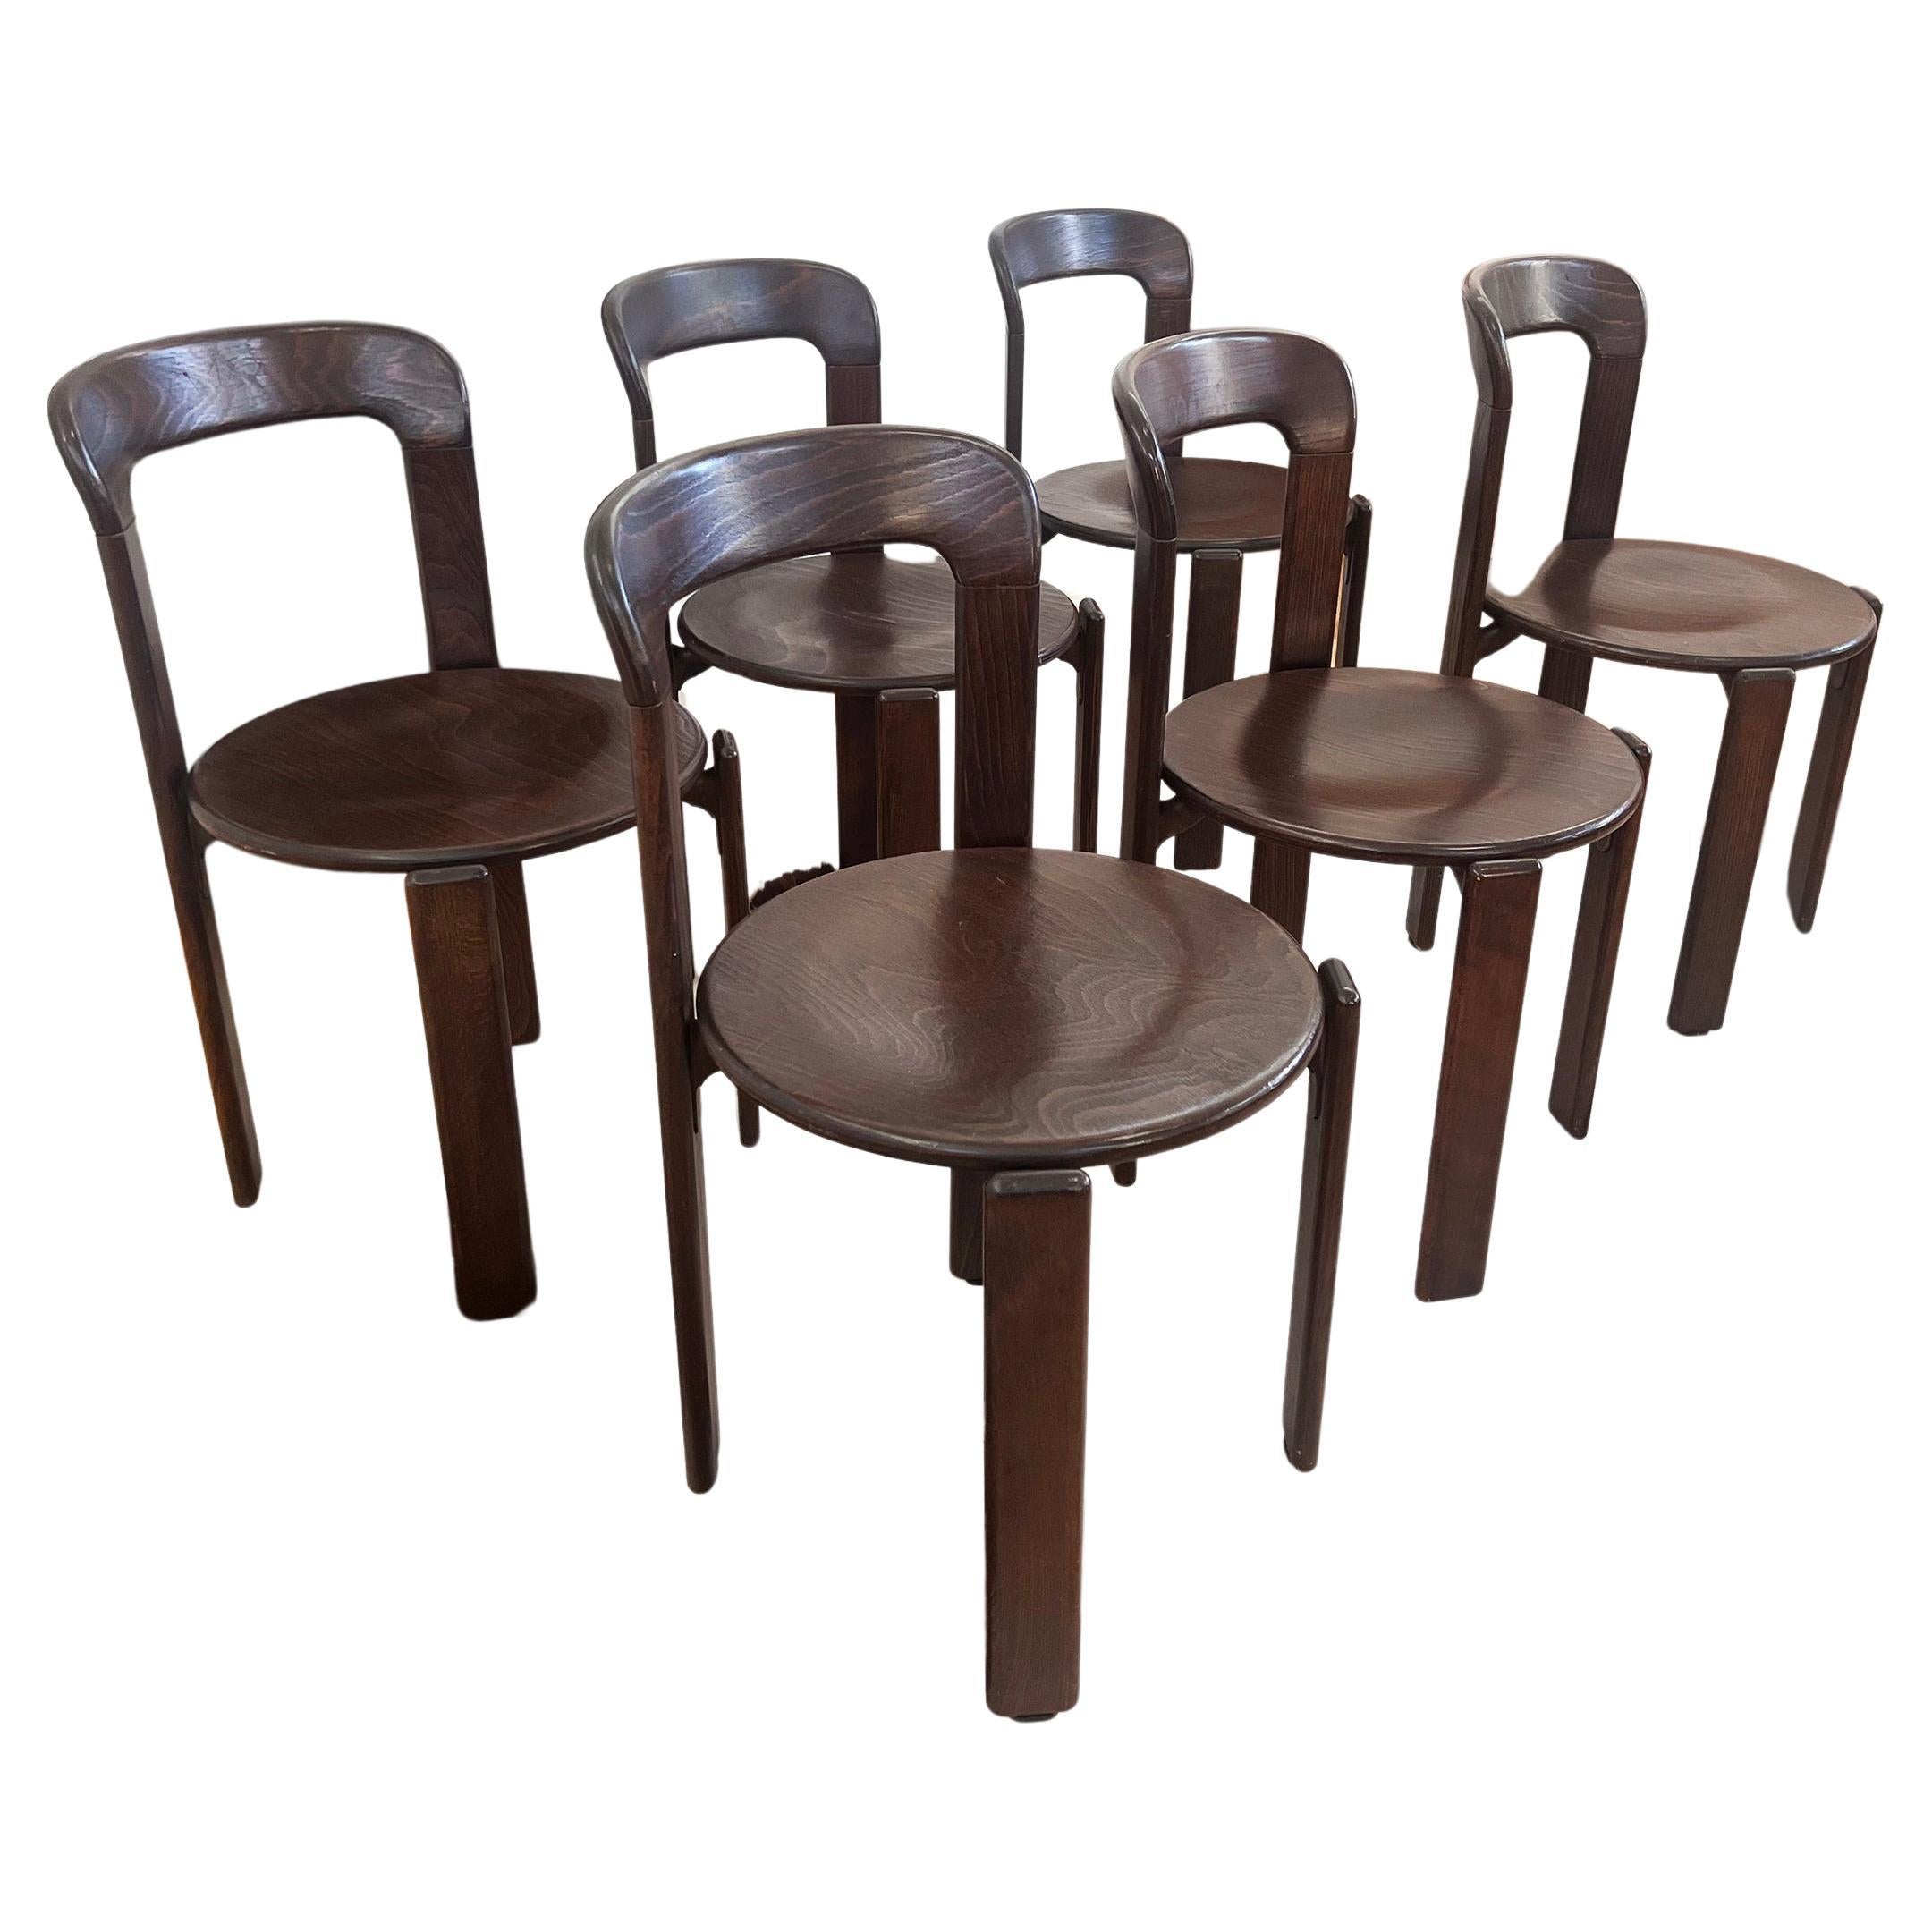 70s Postmodern Solid Dark Wood Dining Chairs Bruno Rey for Dietiker Switzerland